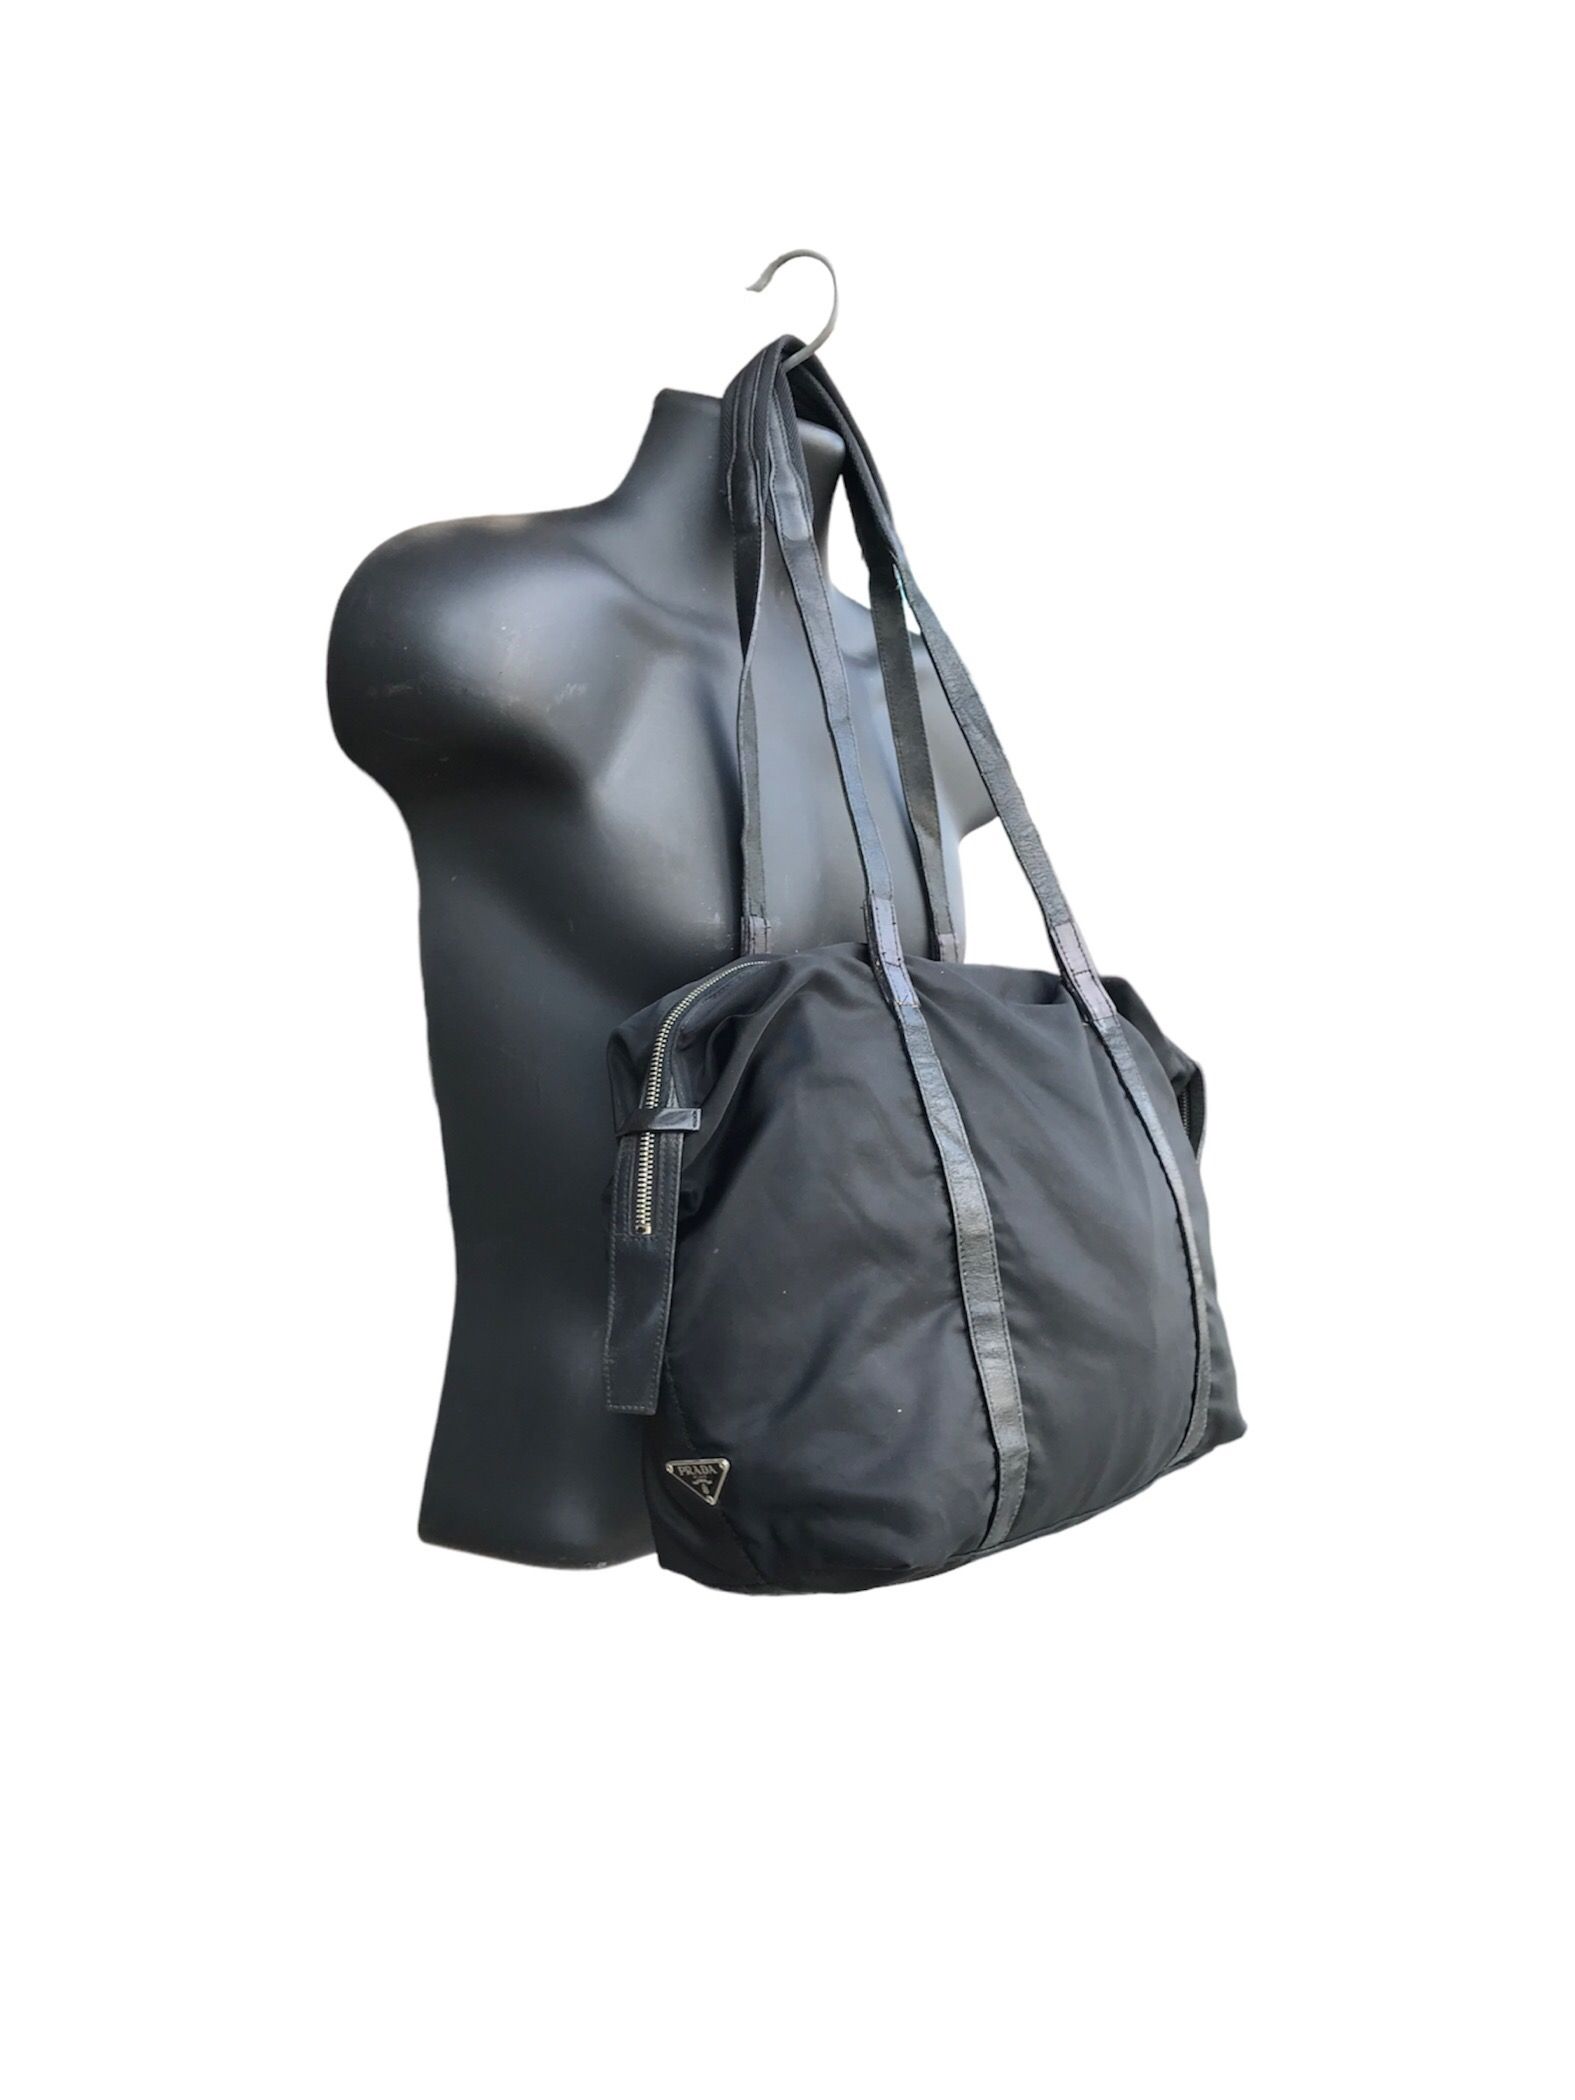 Pre-owned Authentic X Prada Nylon Tote Bag In Black